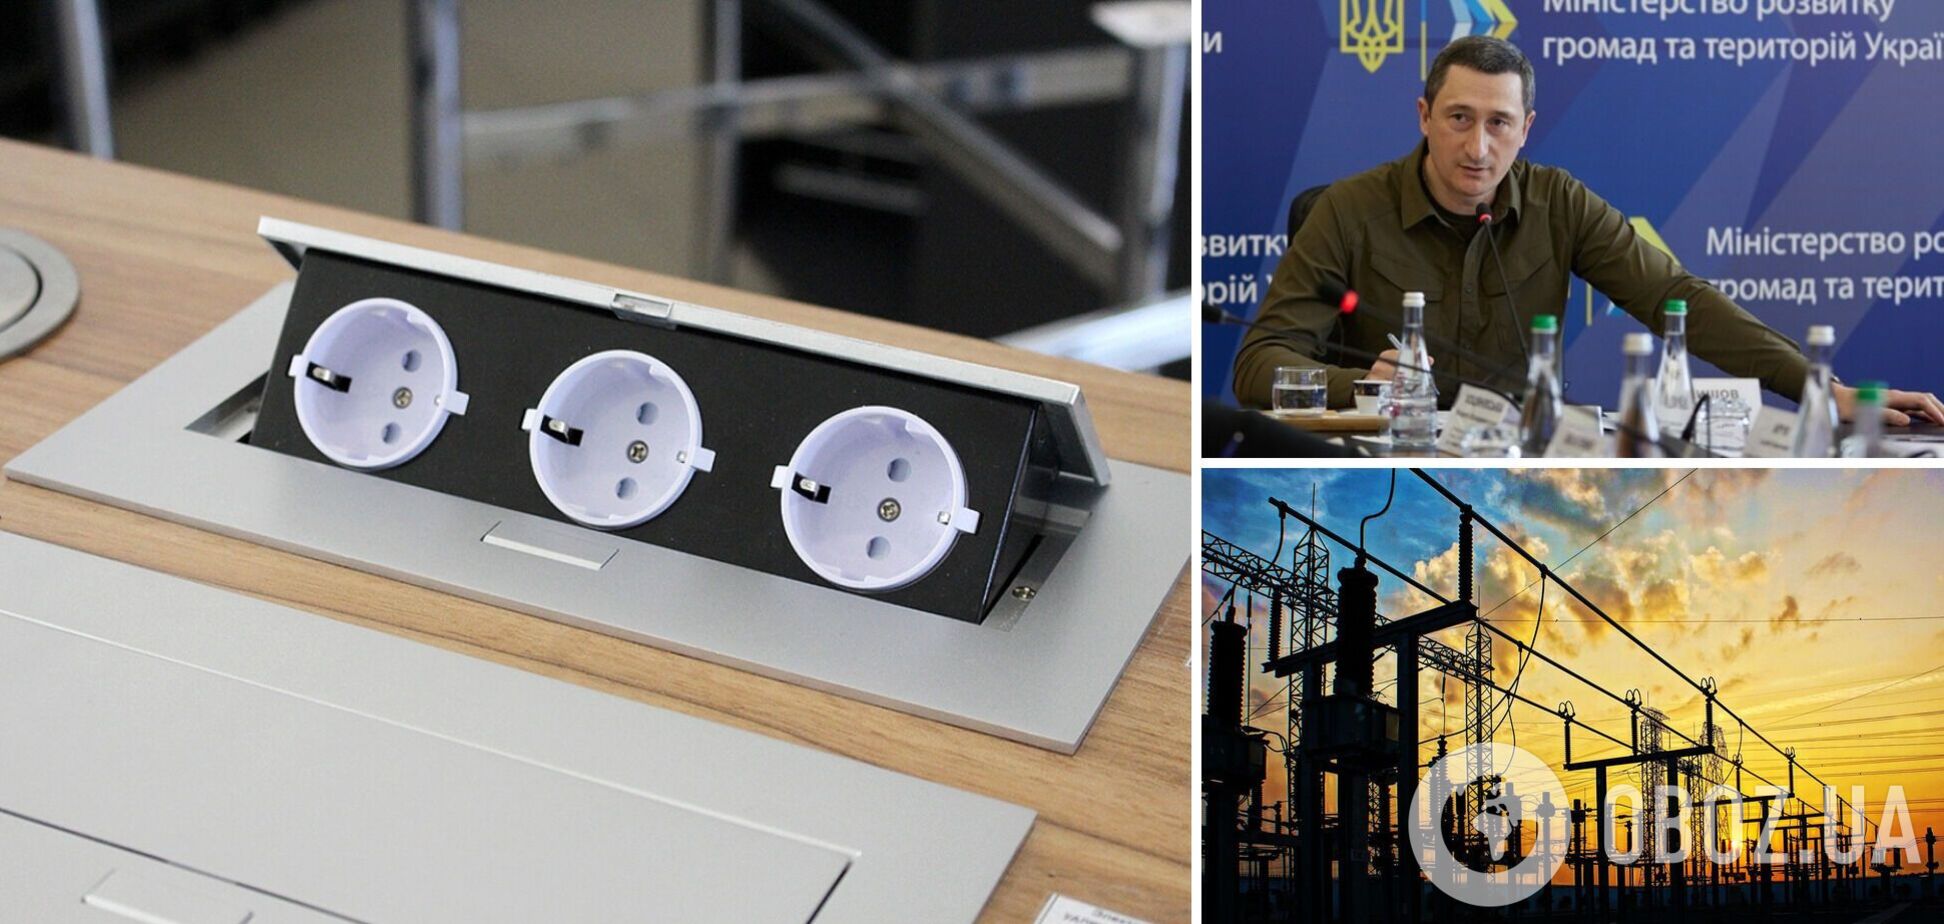 Чернишов анонсував створення резервних енергопунктів